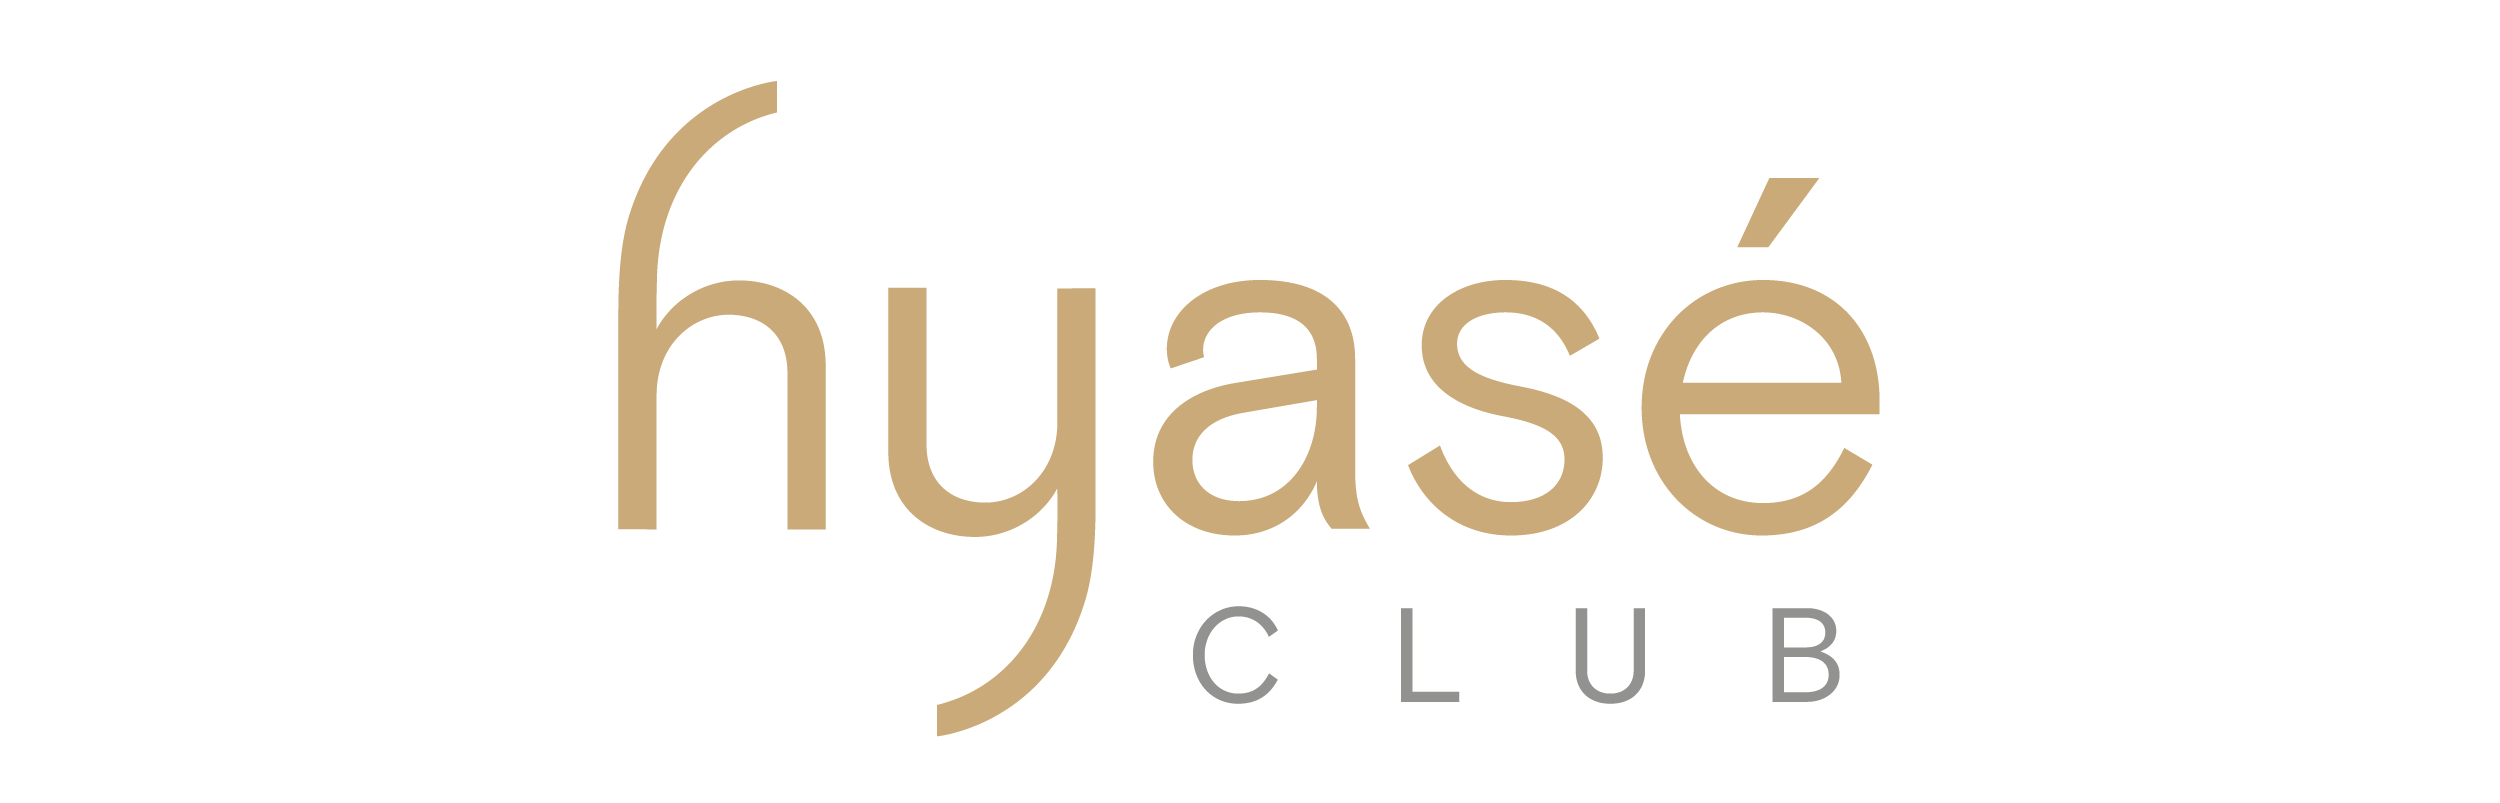 hyaseclub